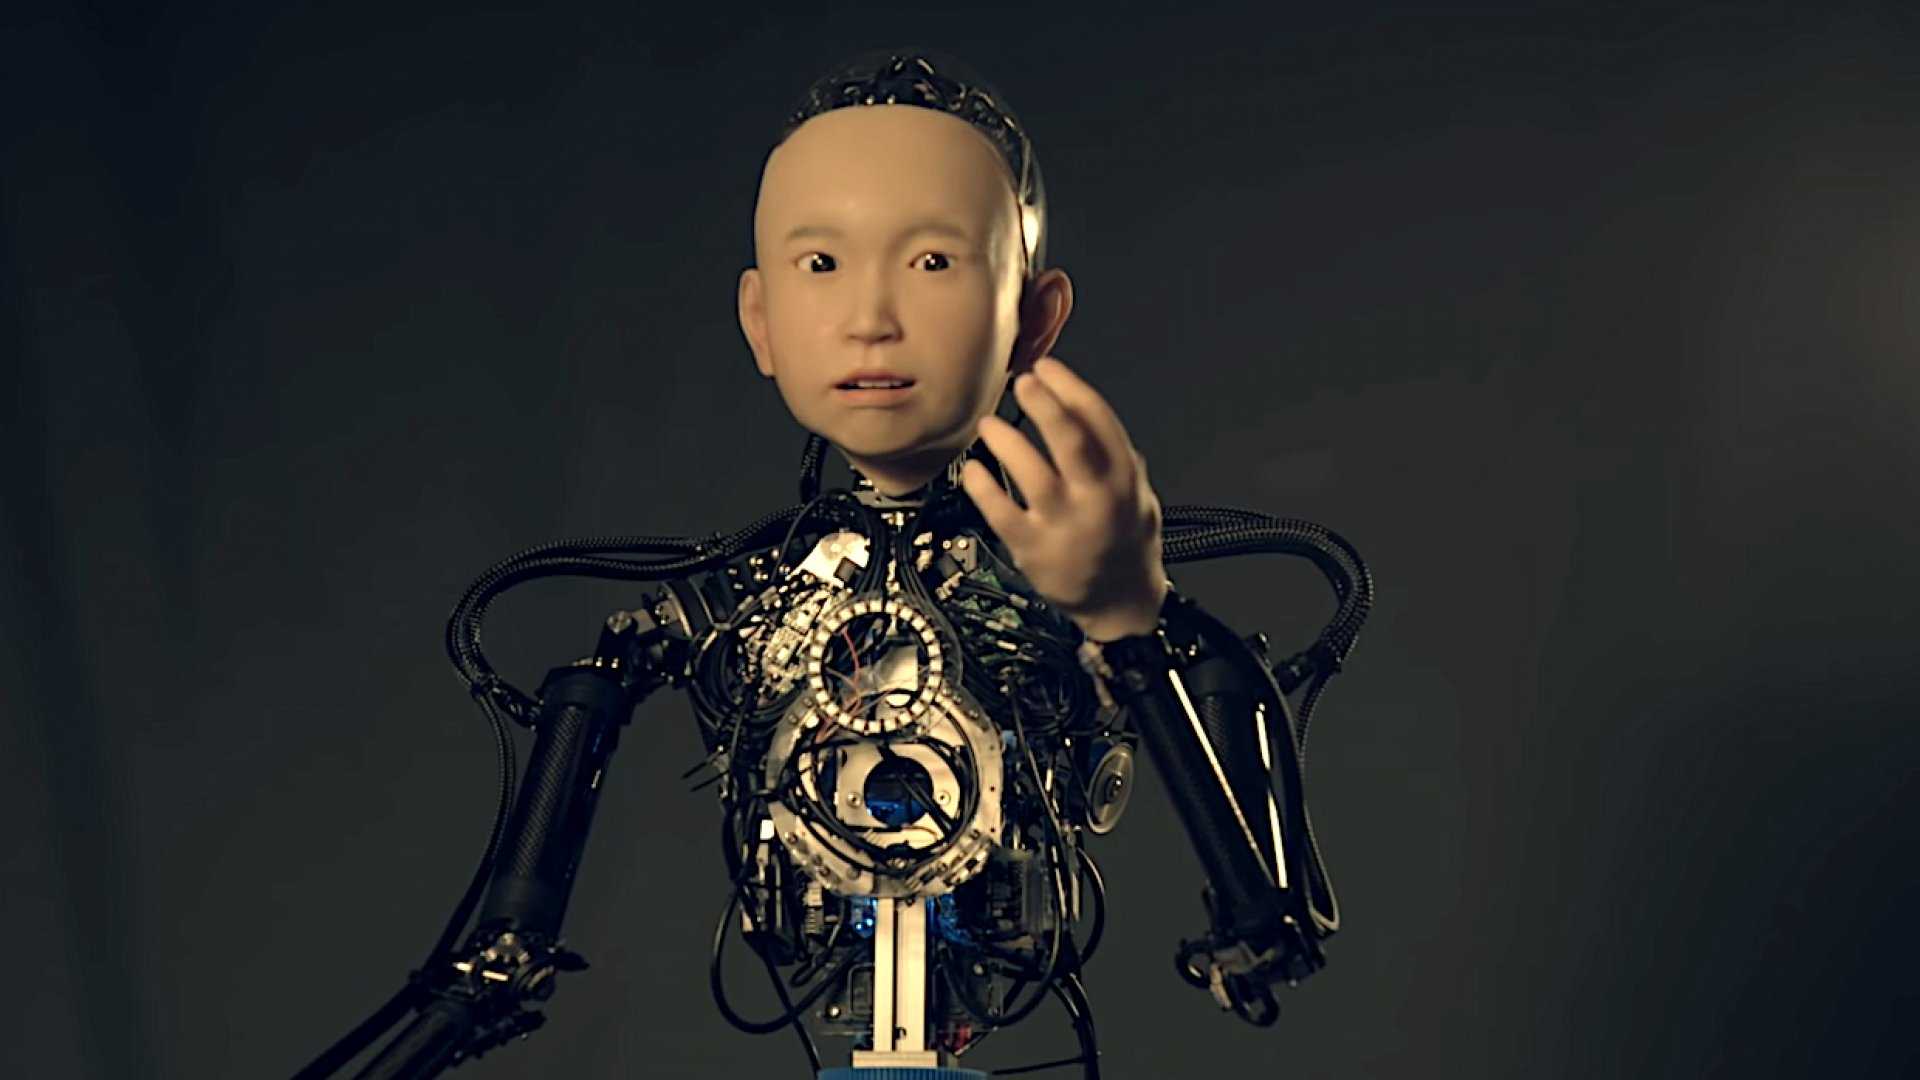 Как работают три закона робототехники айзека азимова и зачем их придумали?